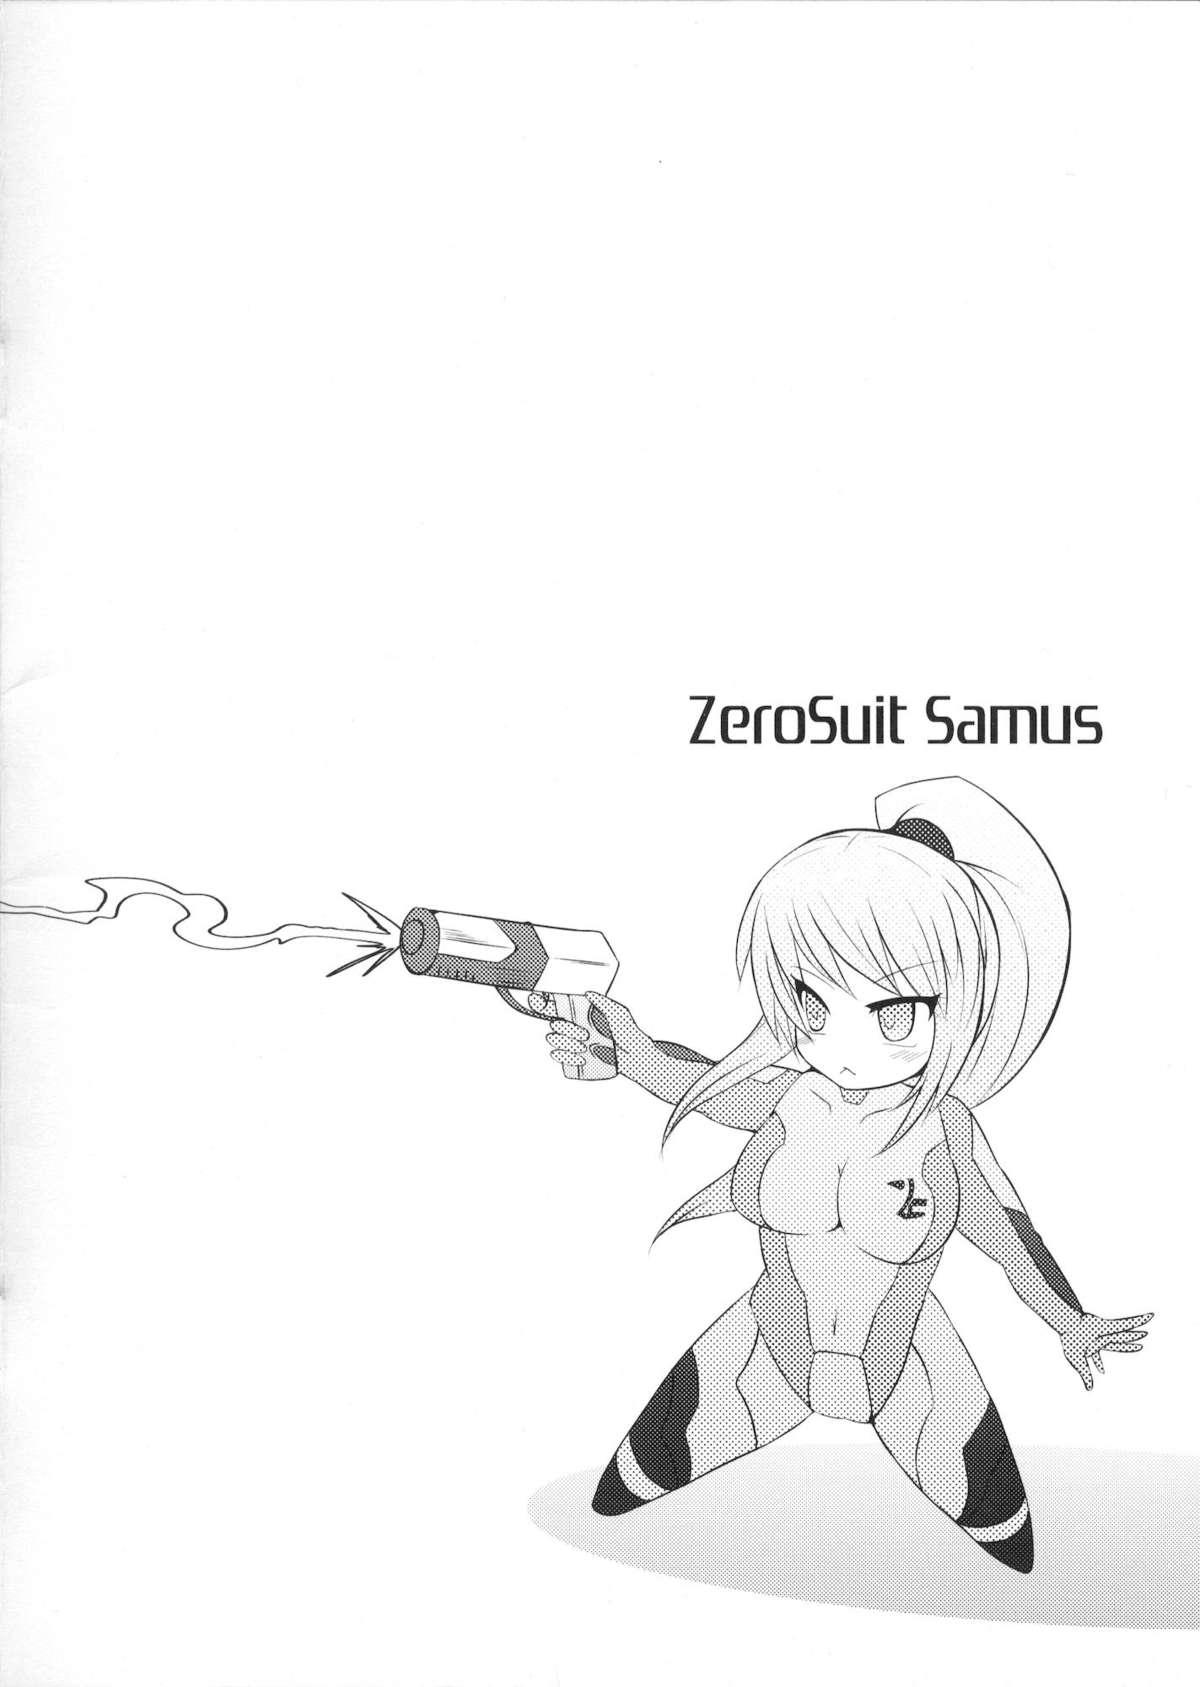 Mamada Samus Hobaku - Metroid Amigo - Page 2